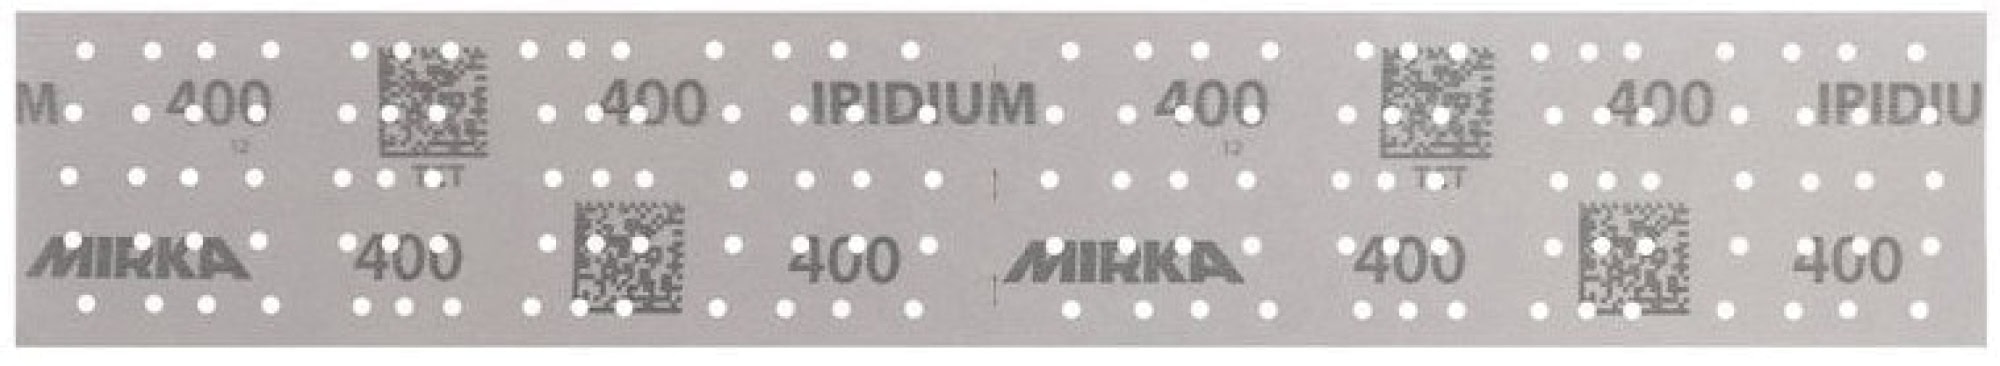 Mirka® Iridium® 246B205080, 70 mm x 400 mm, 2 mal in 70 x 198 mm Stücke perforiert, P80, Multilochung, Kletthaftend, Schleifstreifen mit Keramik- und Aluminiumkorn